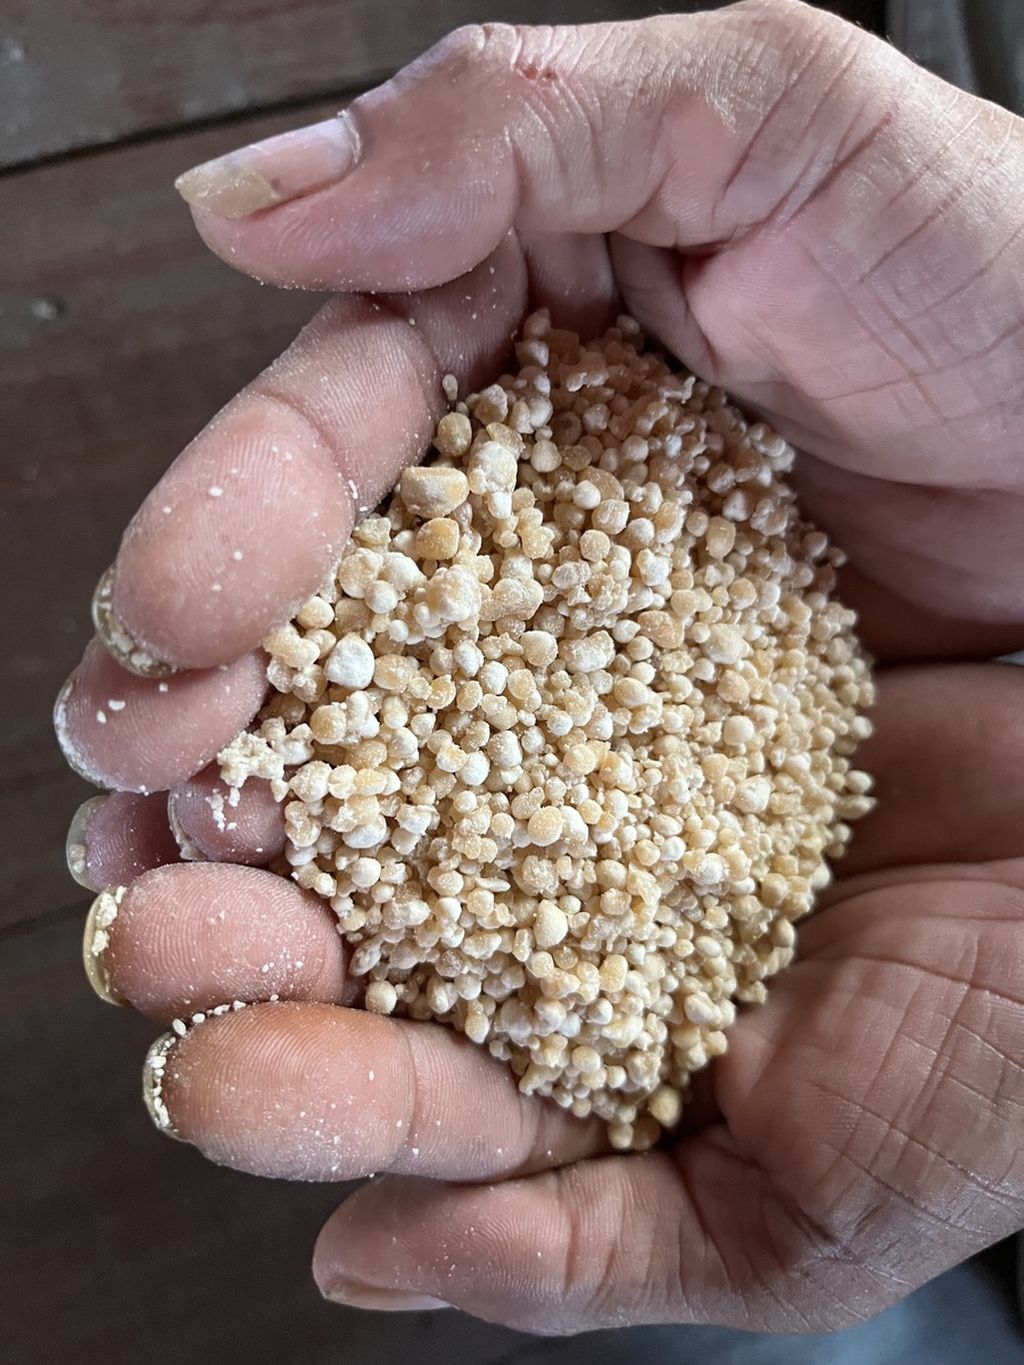 Kuluk, sumber pangan dari pati sagu atau singkong, menjadi sumber karbohidrat alternatif bagi masyarakat Desa Kalumpang, Kabupaten Kapuas. Tanaman sagu rumbia banyak ditemukan di desa ini.